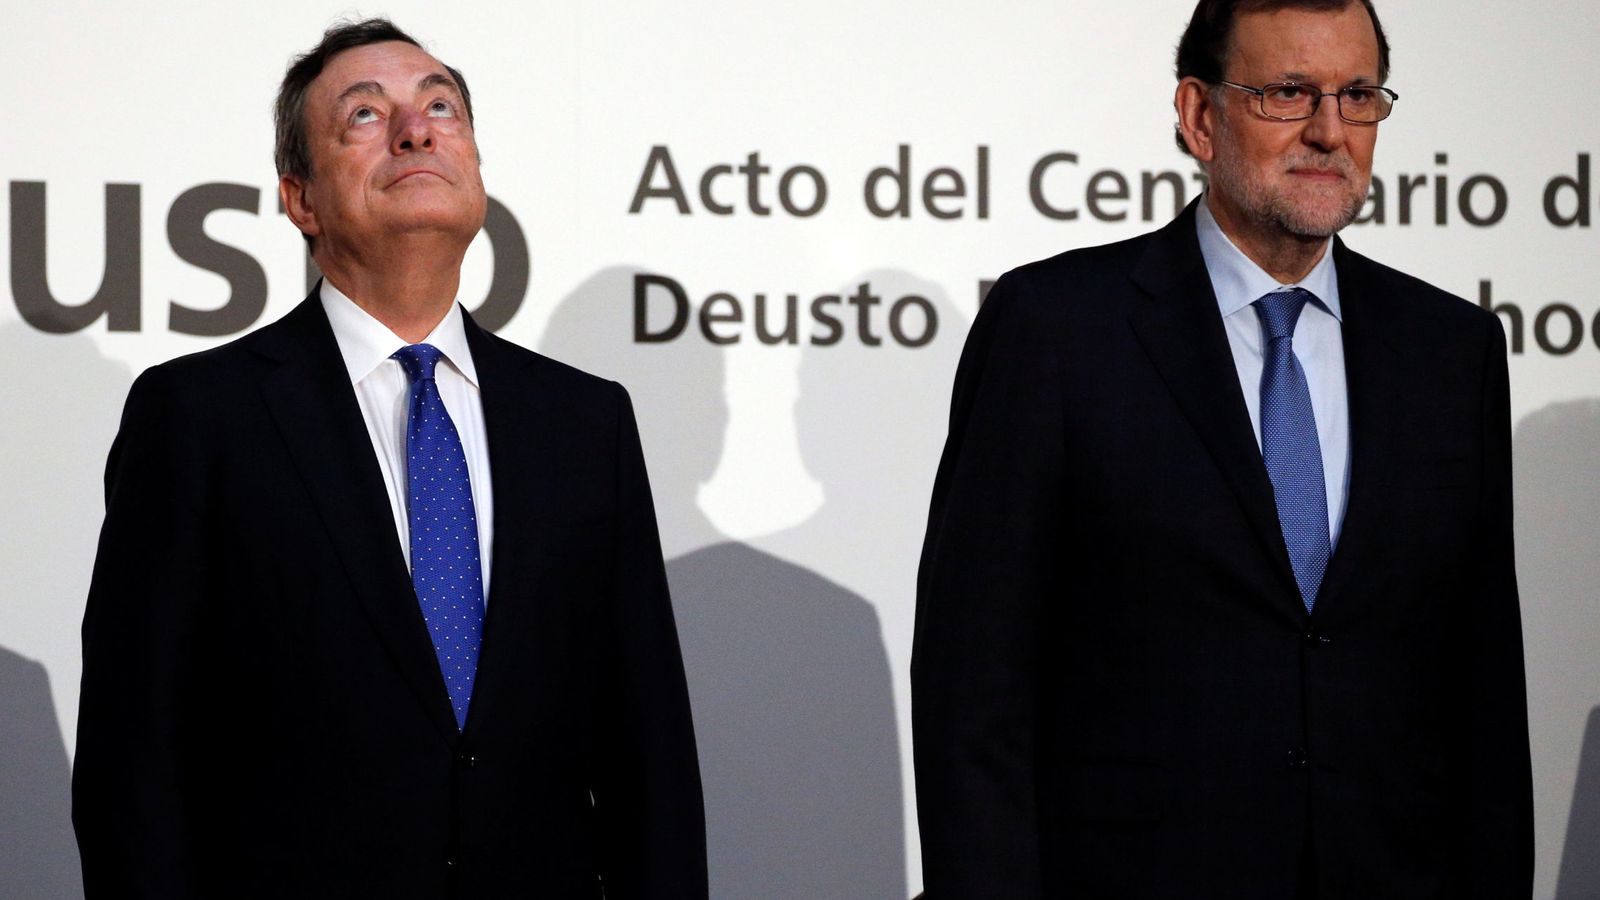 Foto: El presidente del Banco Central Europeo, Mario Draghi, junto al presidente del Gobierno español, Mariano Rajoy. (Reuters)